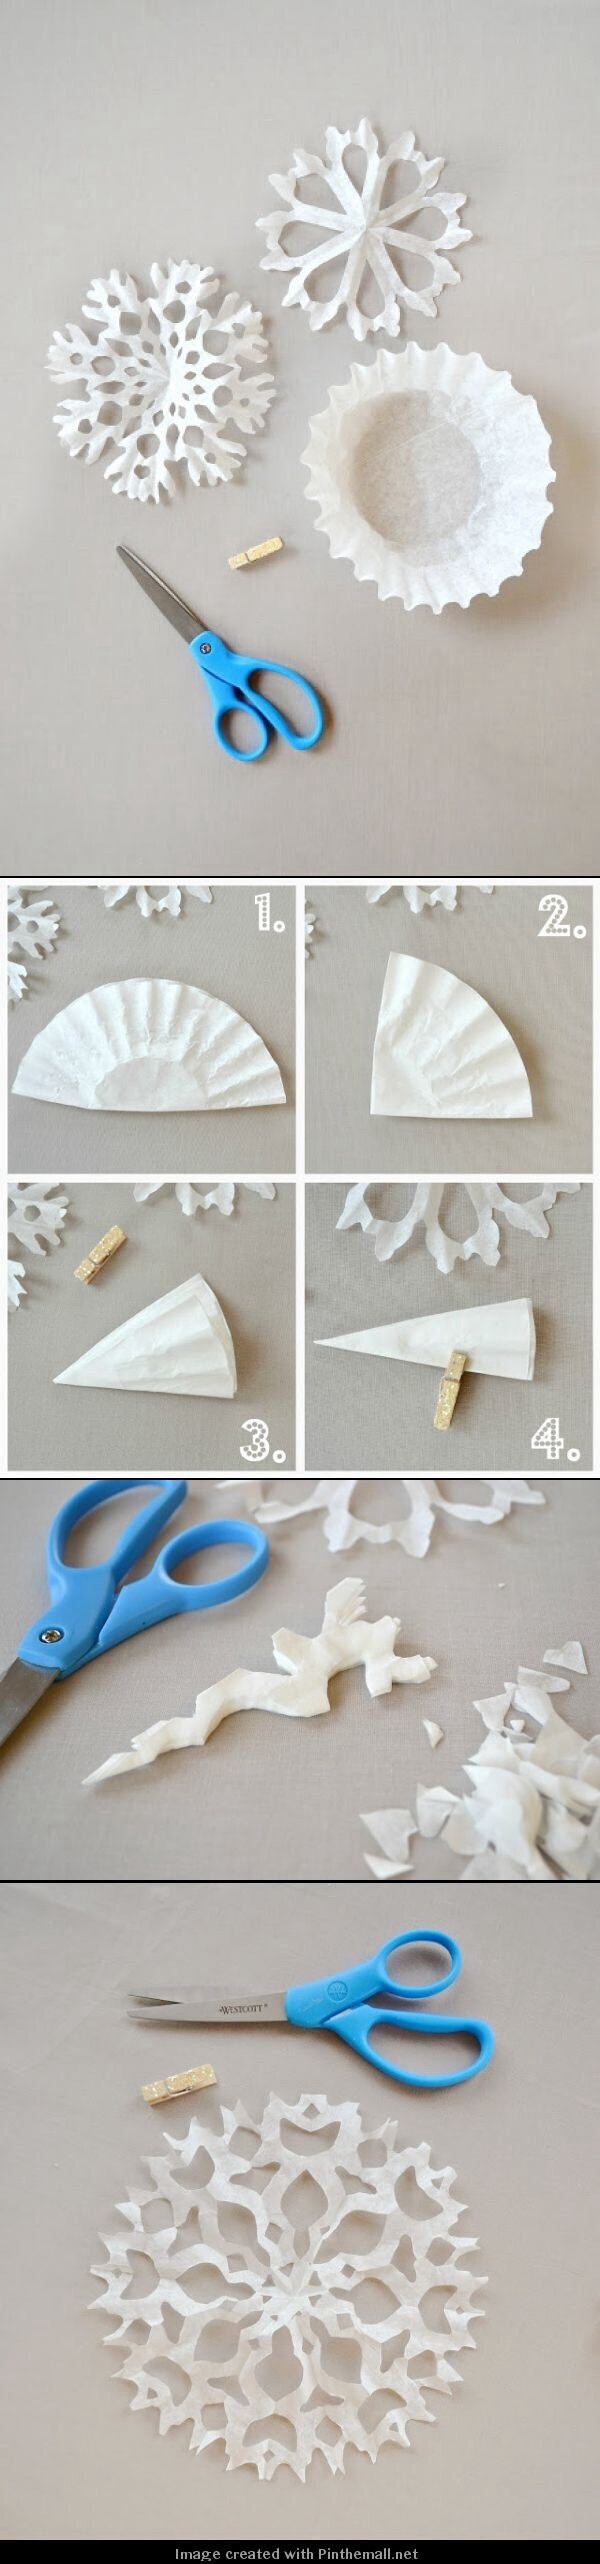 用蛋糕纸材料来制作剪纸雪花